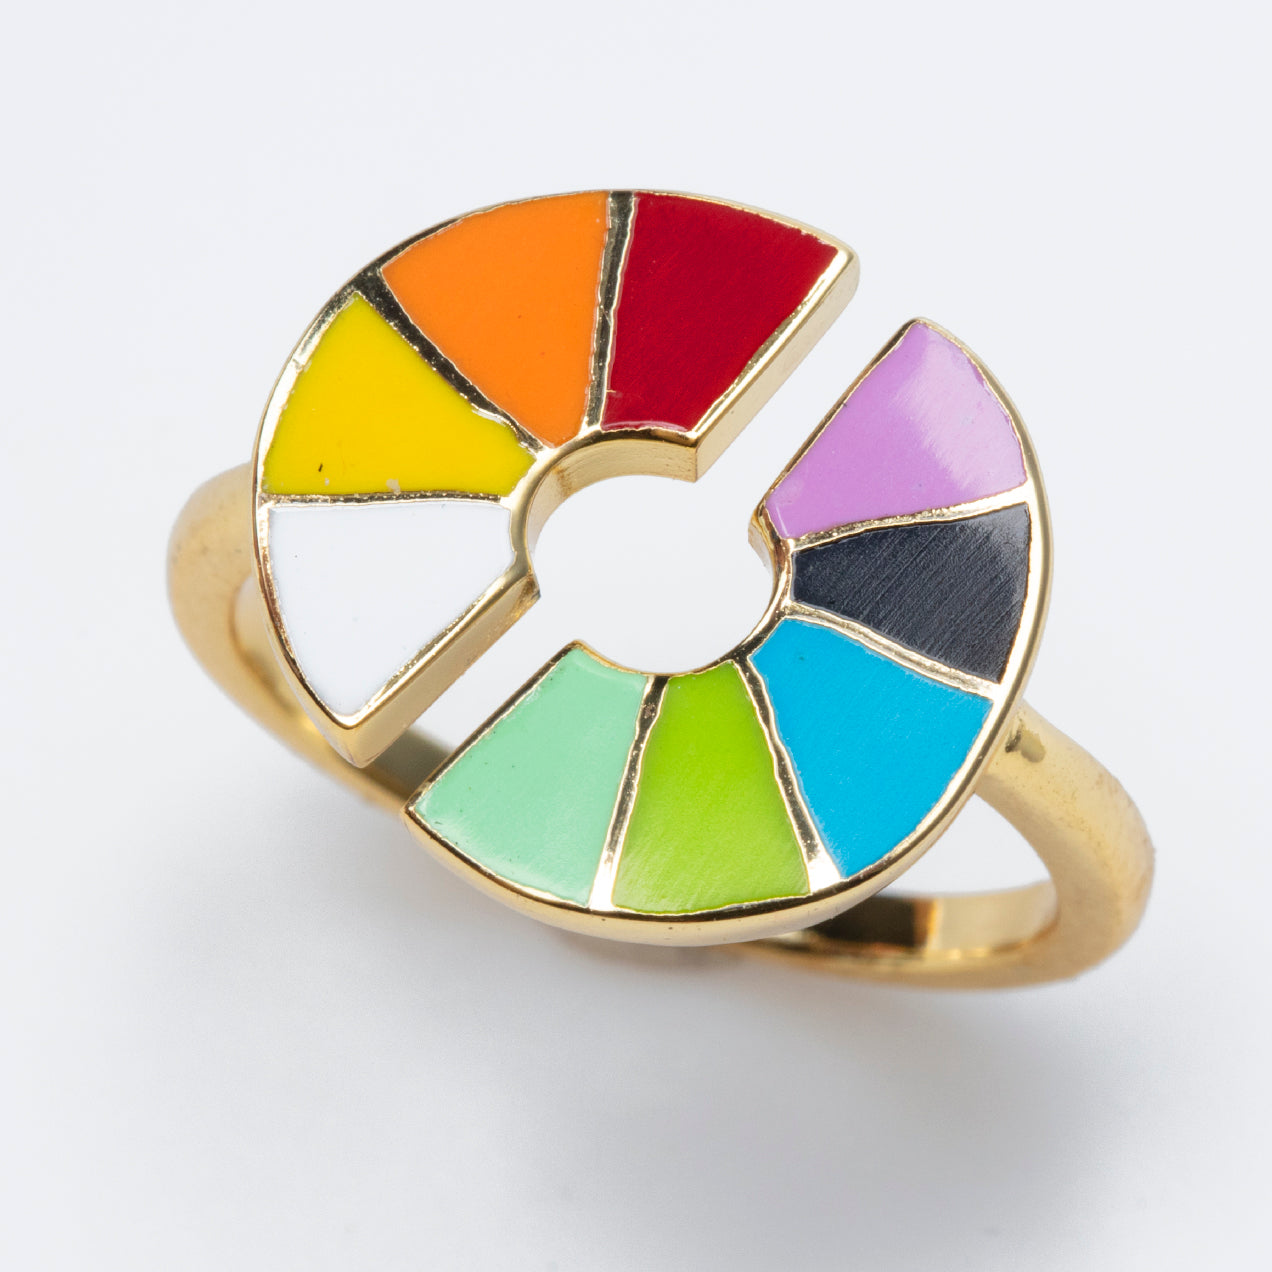 Color Wheel Enamel Ring - Chrysler Museum of Art Shop